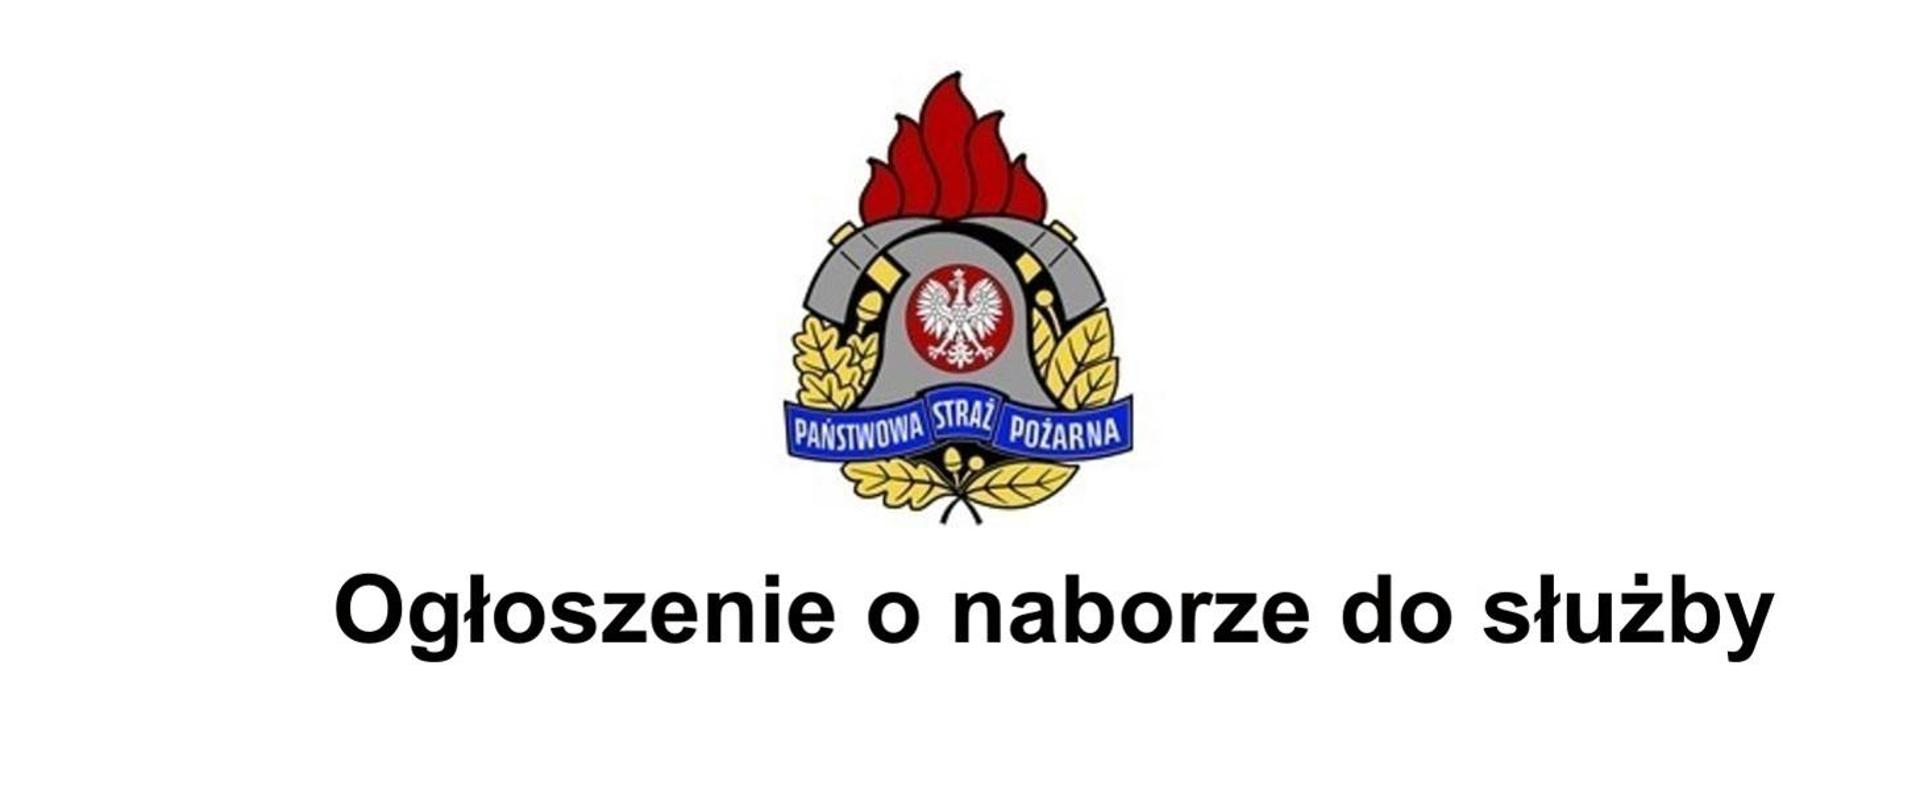 Graficzne logo Państwowej straży pożarnej przedstawia ogień, hełm strażacki oraz toporki strażackie otoczone liśćmi dębu poniżej napis Ogłoszenie o naborze do służby